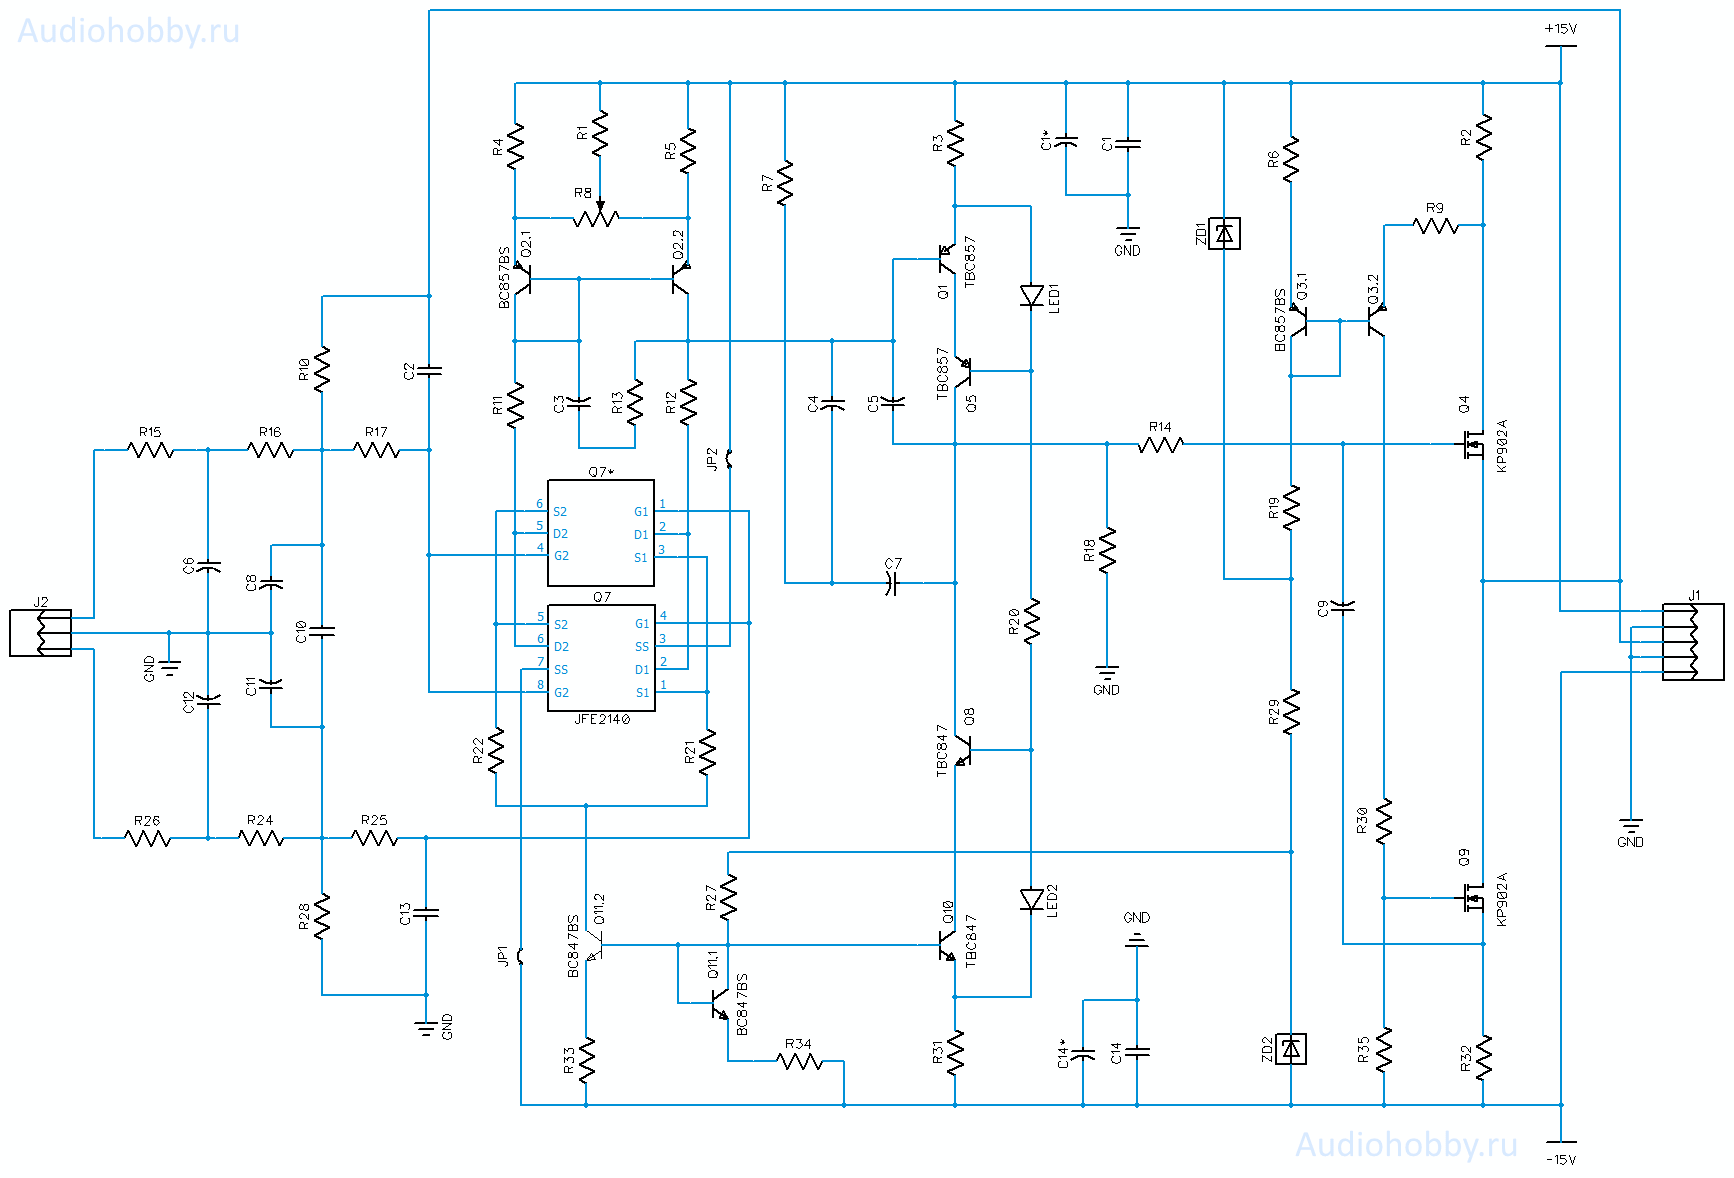 Схема дискретного аналогового фильтра для ЦАП - AH-F7 PRO